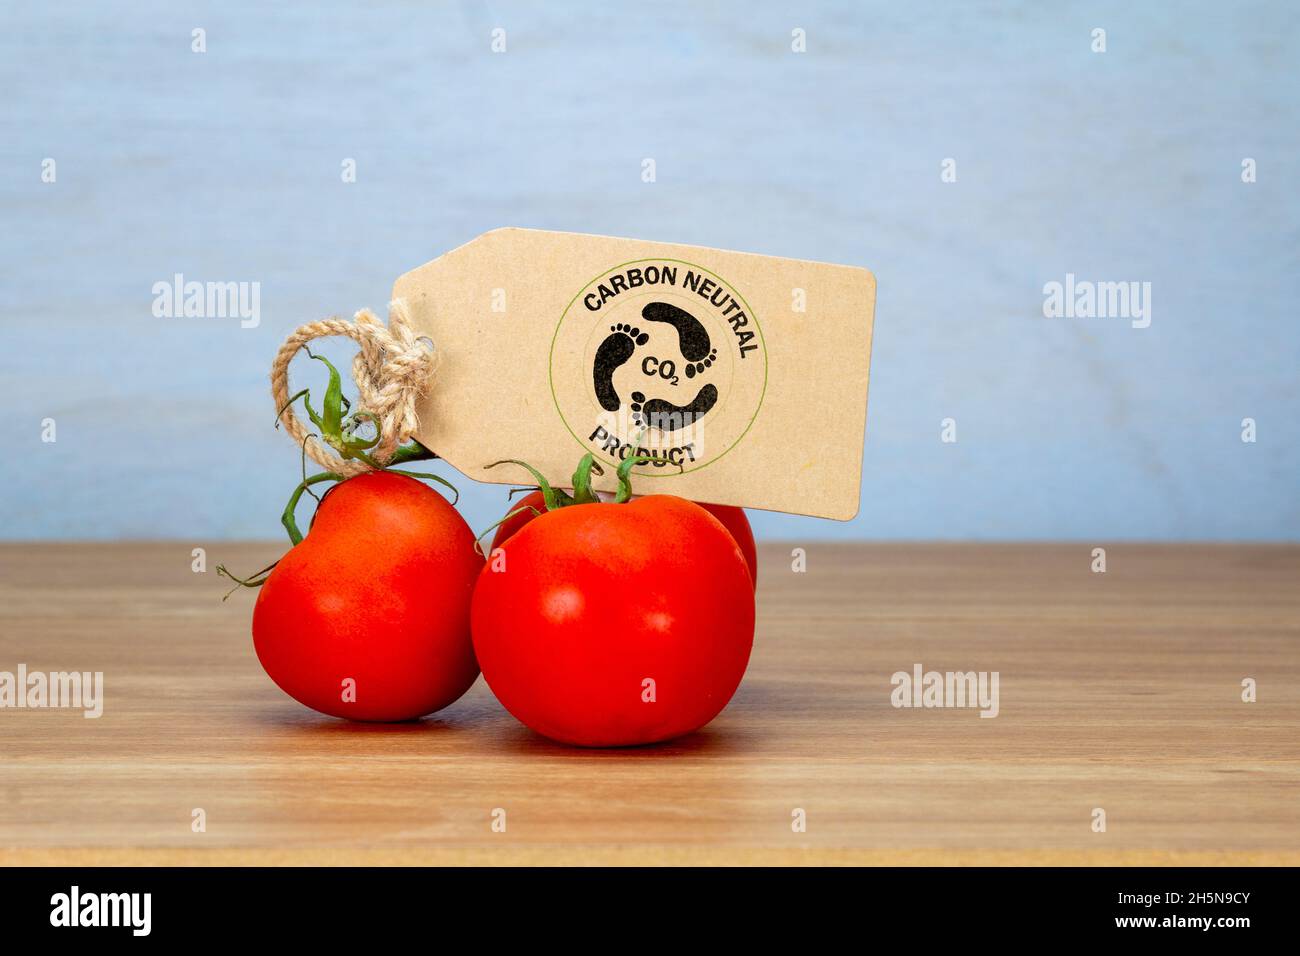 tomate avec étiquette de produit neutre en carbone, étiquettes de consommation sur les aliments pour aider à une consommation durable et éthique Banque D'Images